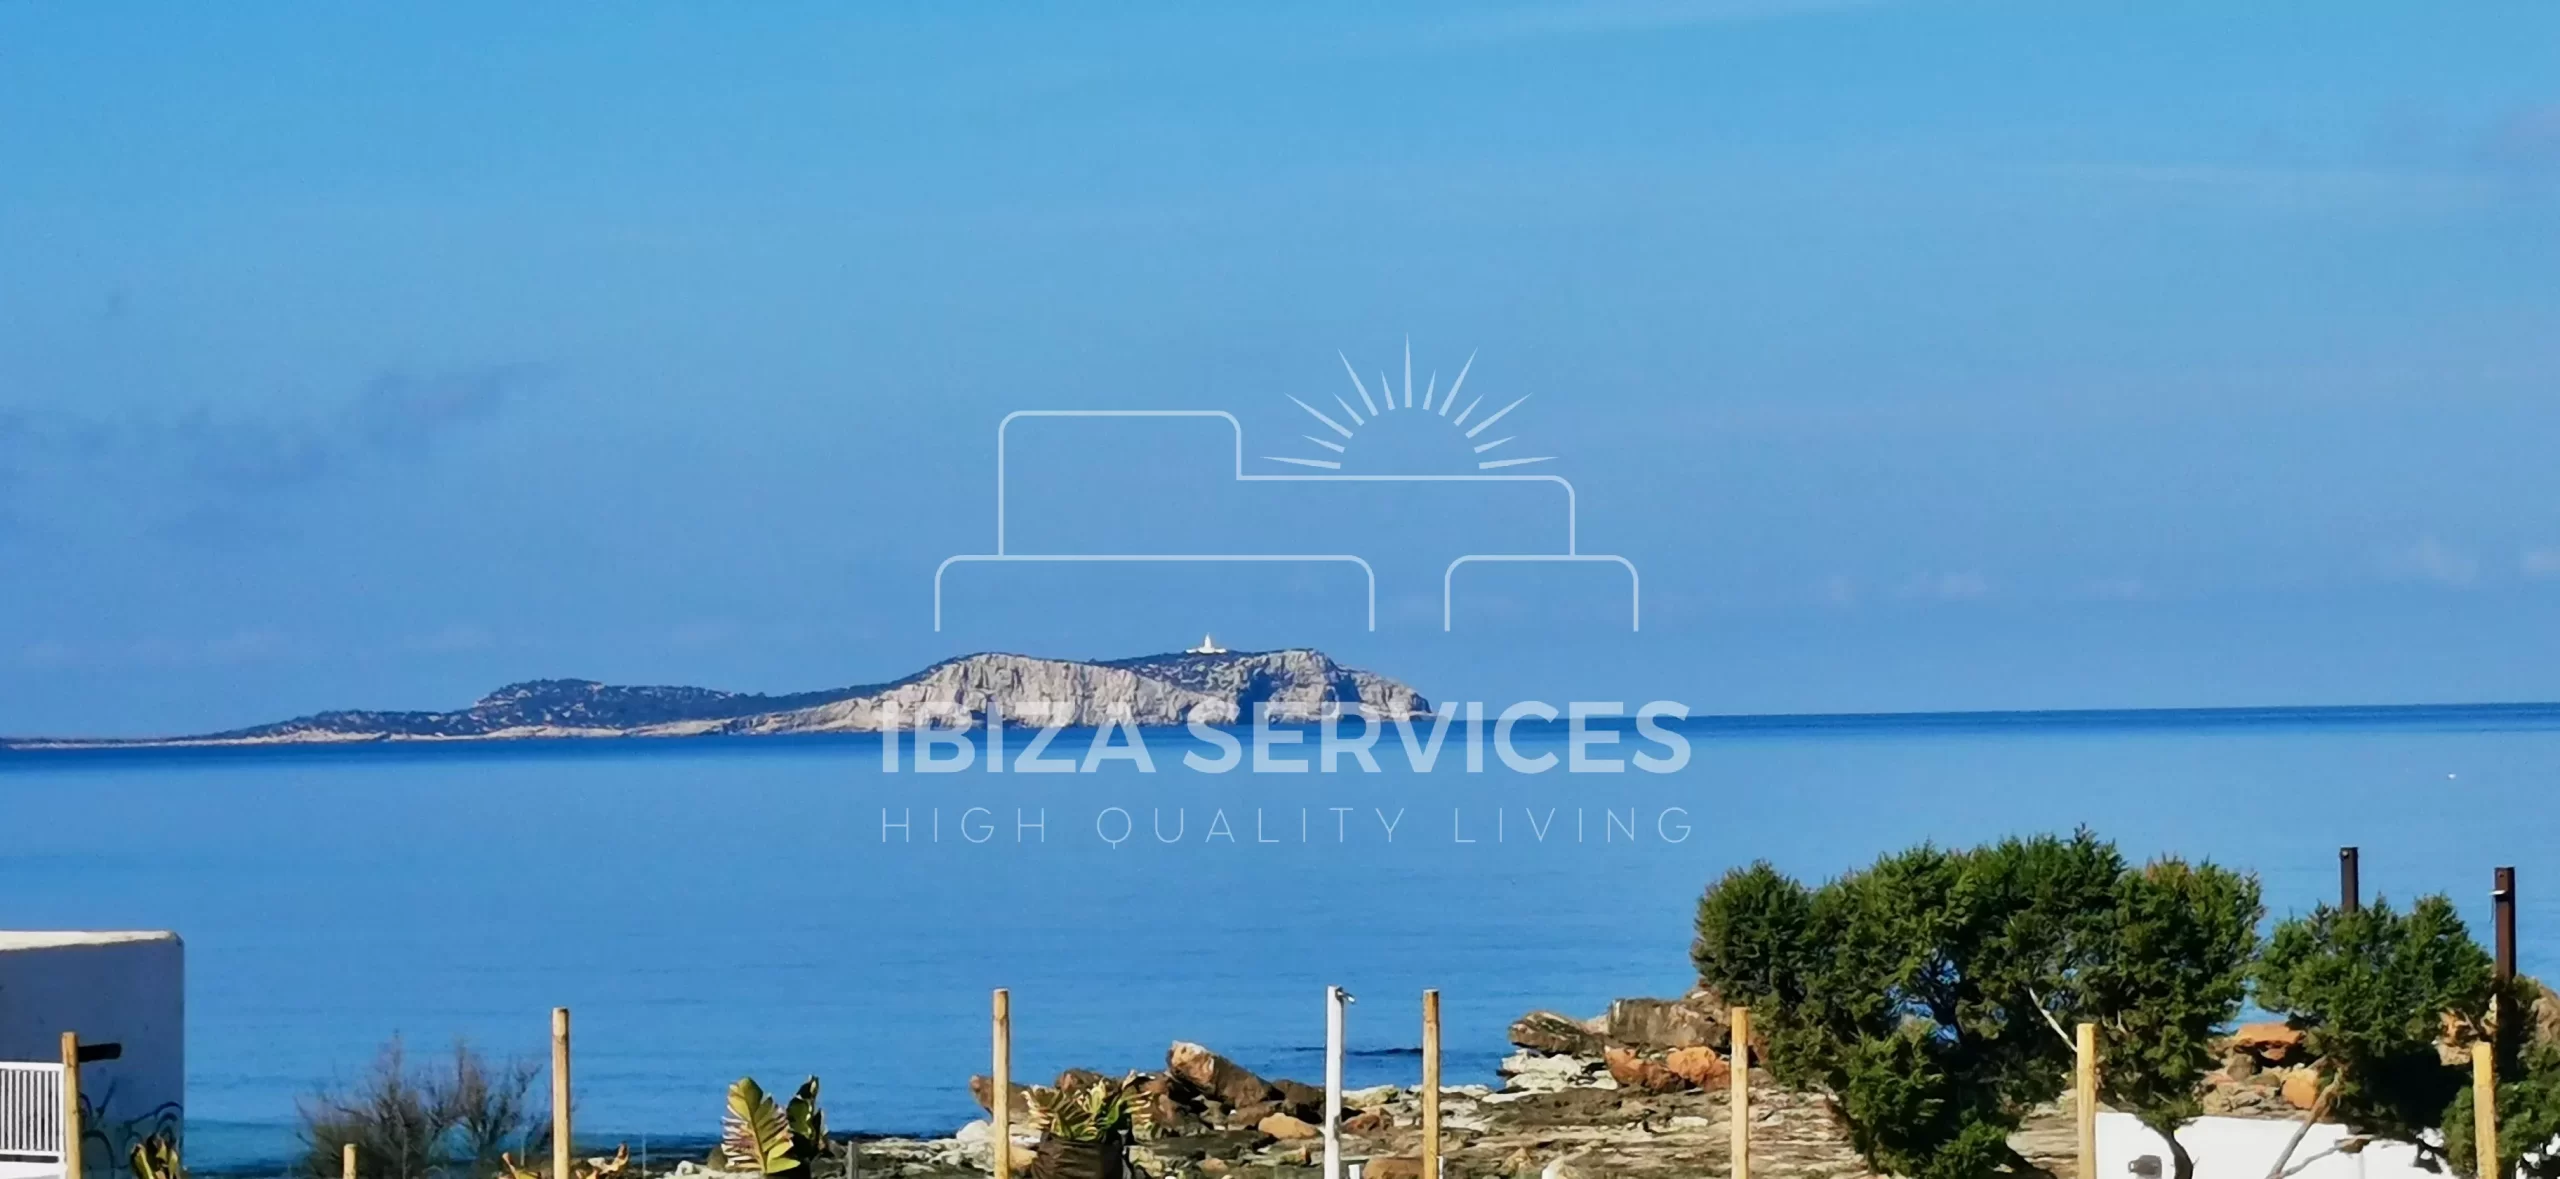 Appartement spacieux avec vue sur la mer à vendre sur la côte ouest d’Ibiza